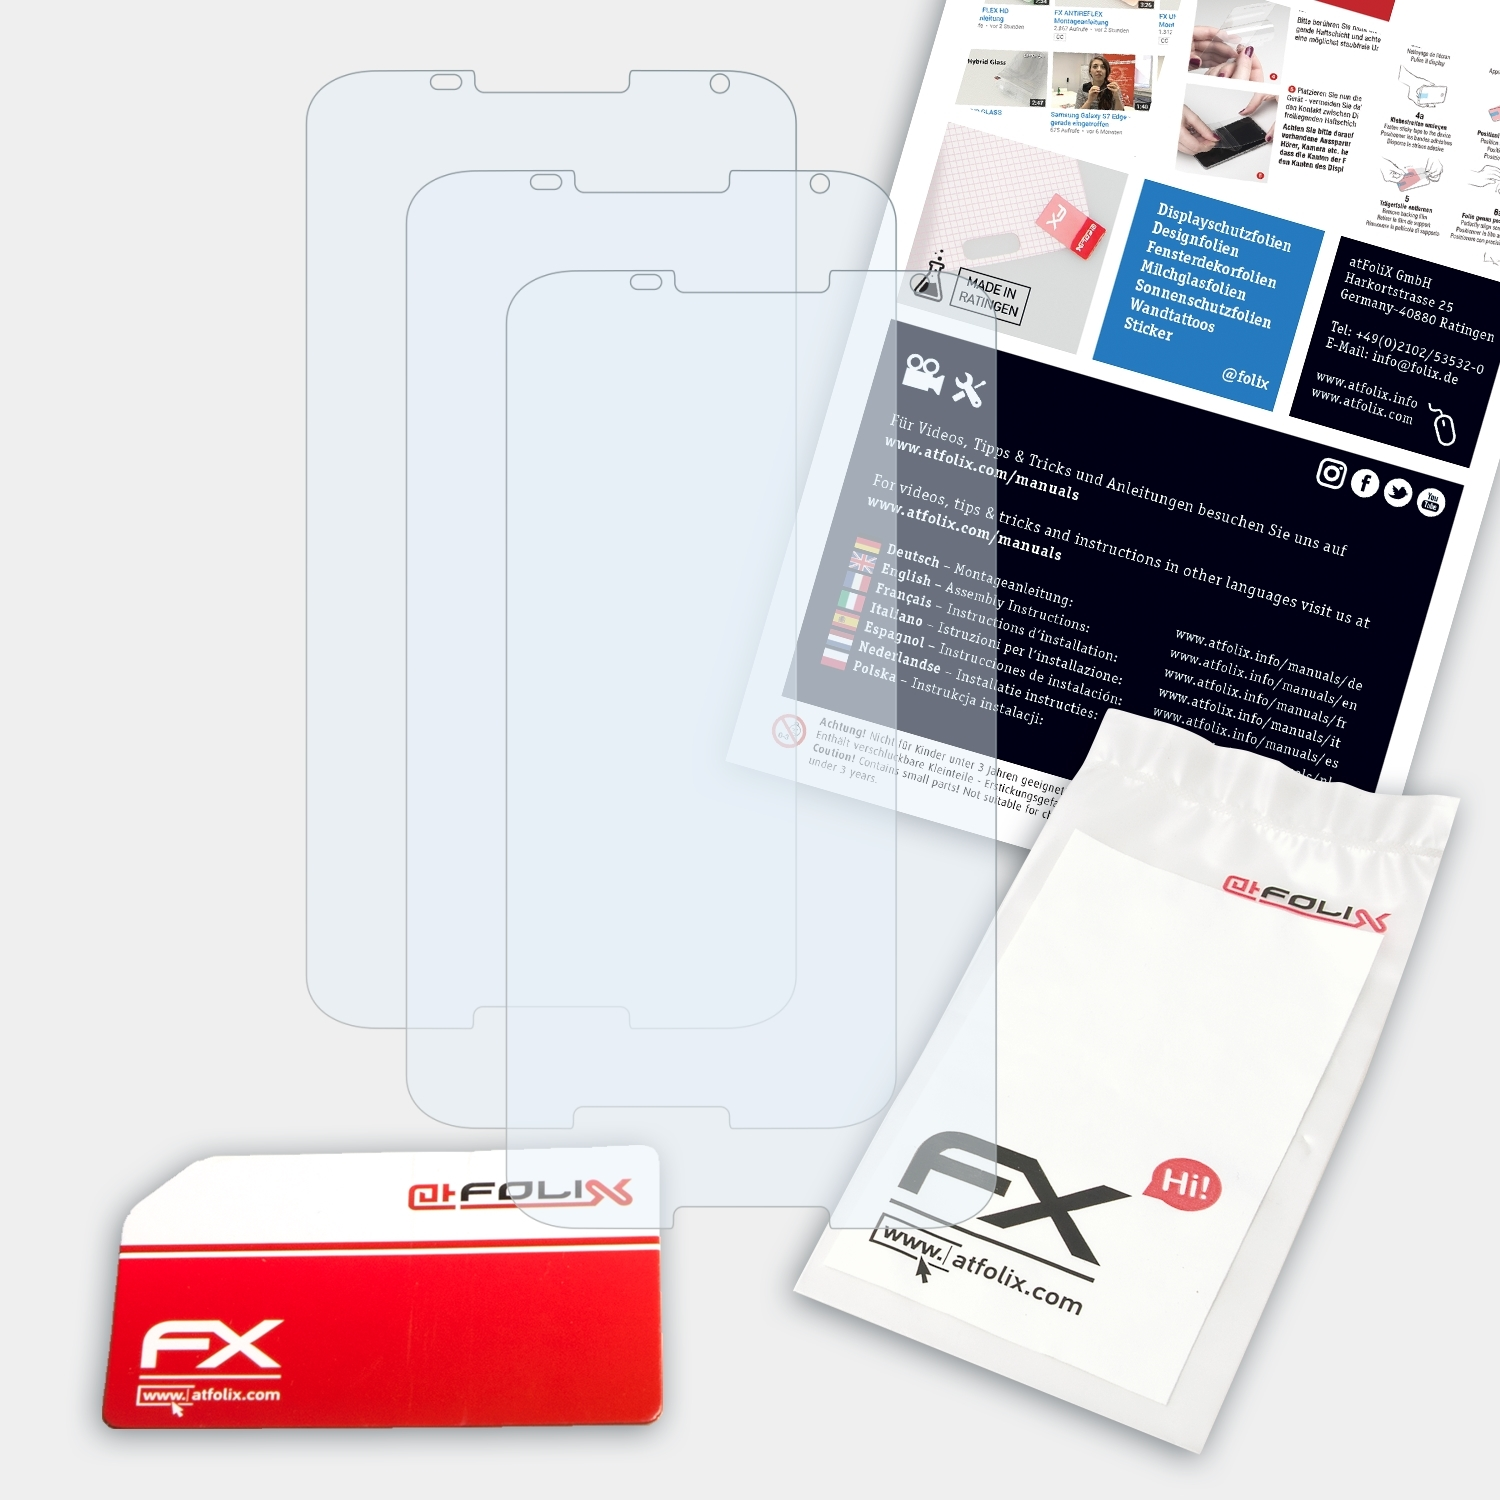 ATFOLIX Nexus FX-Clear 3x Google Displayschutz(für 6)